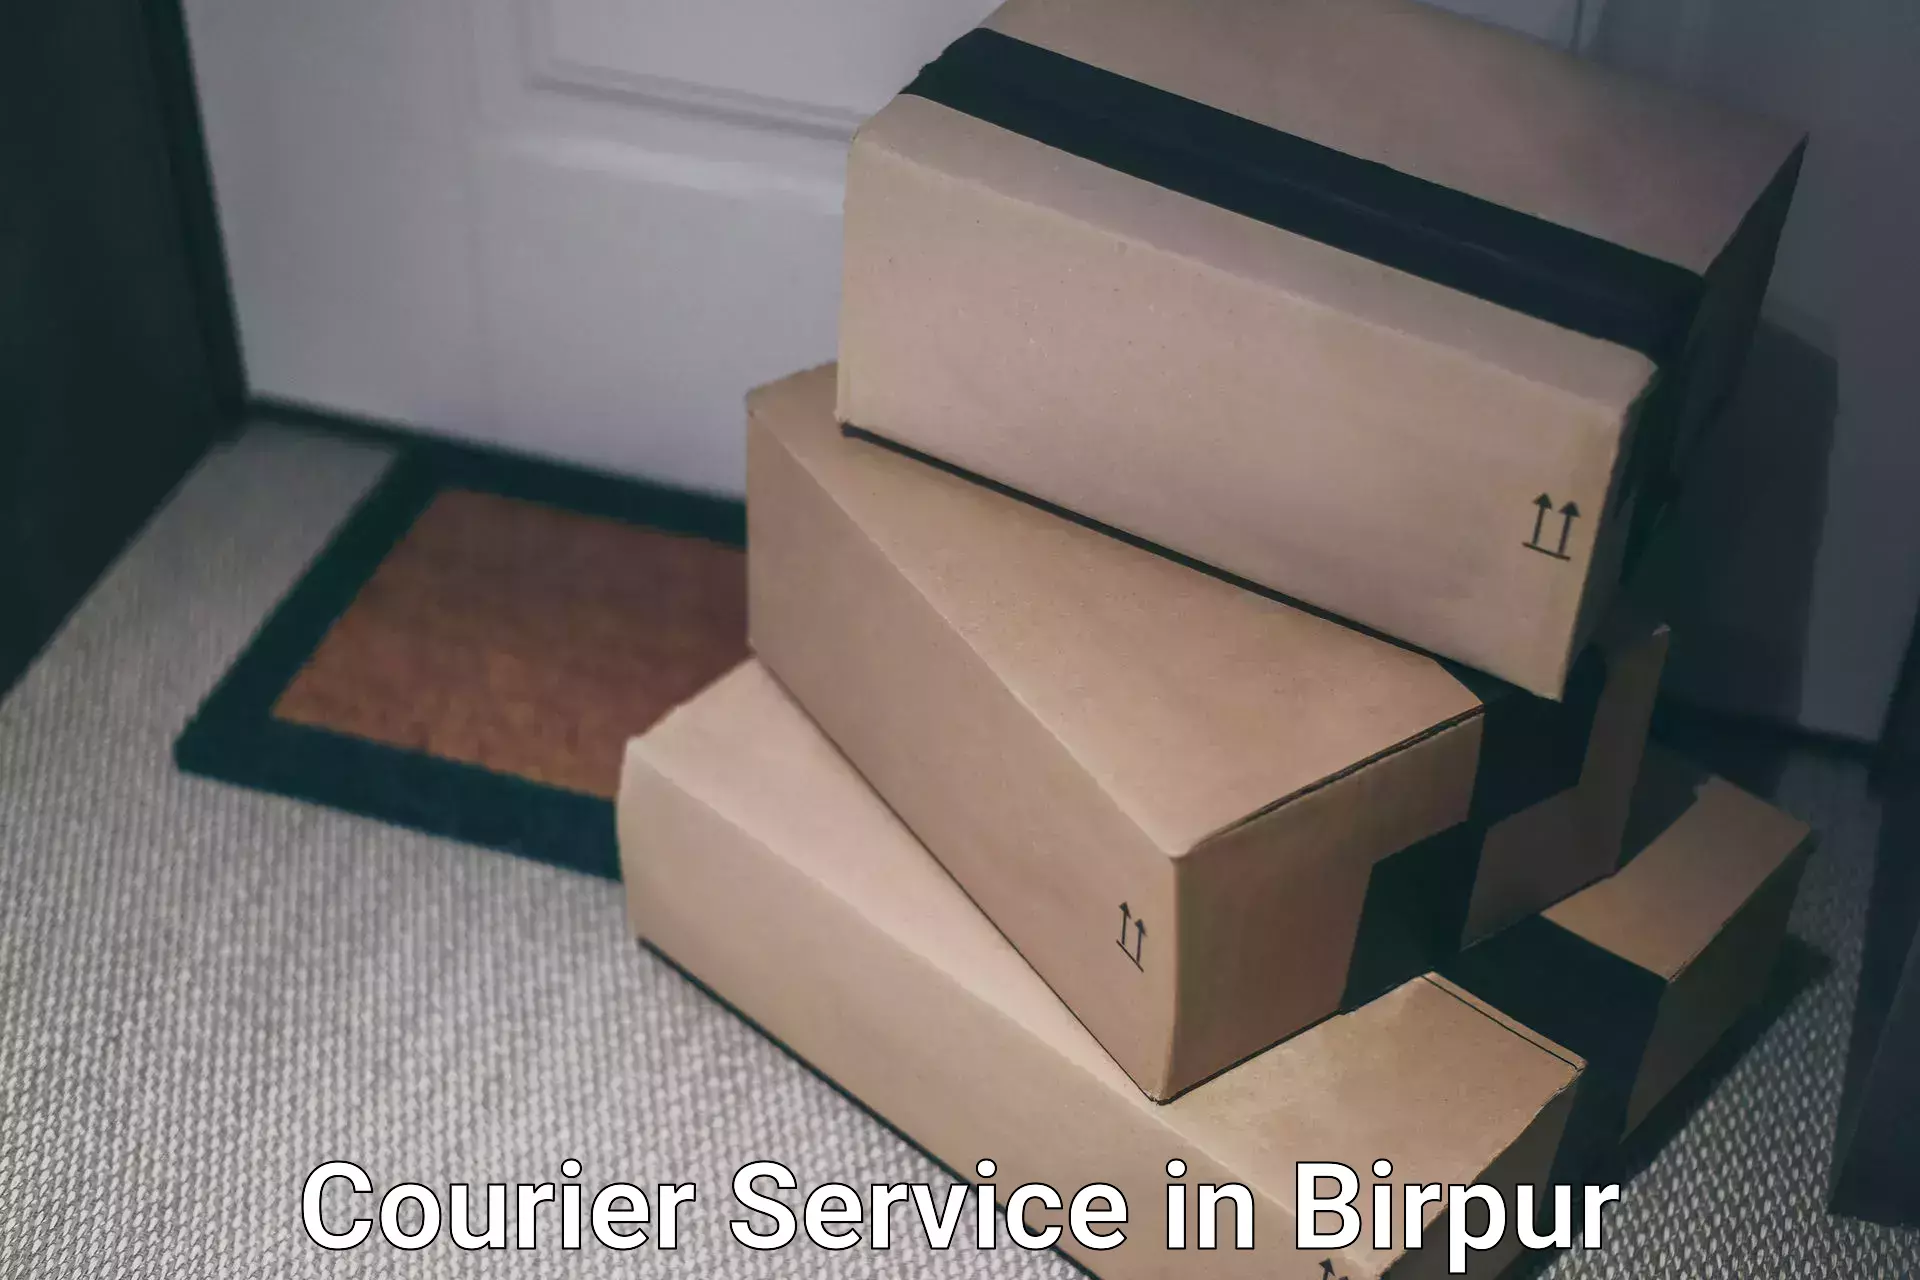 Logistics management in Birpur